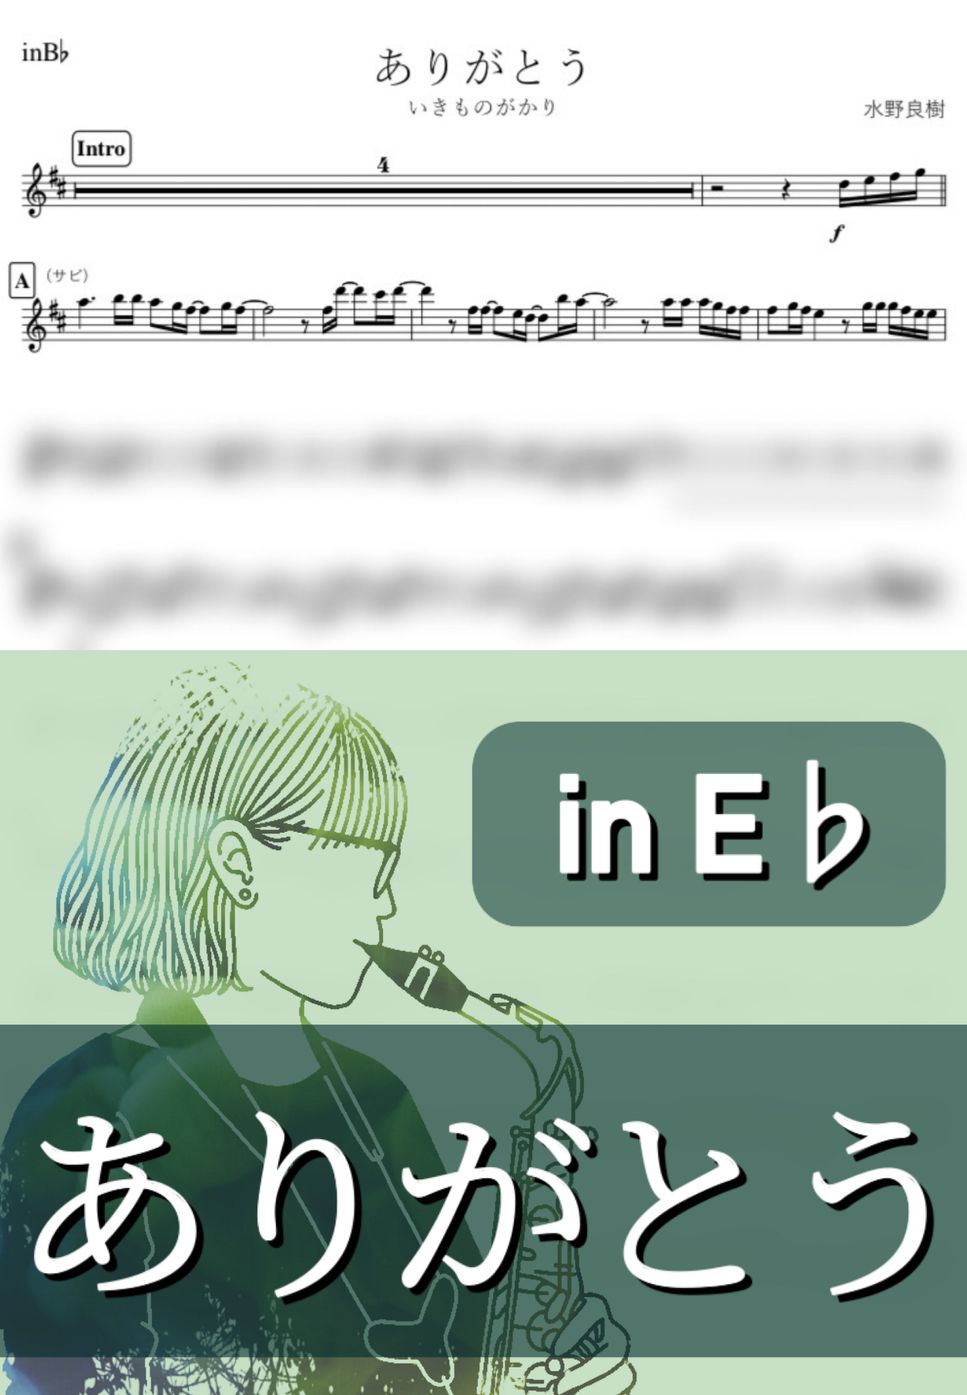 いきものがかり - ありがとう (E♭) by kanamusic